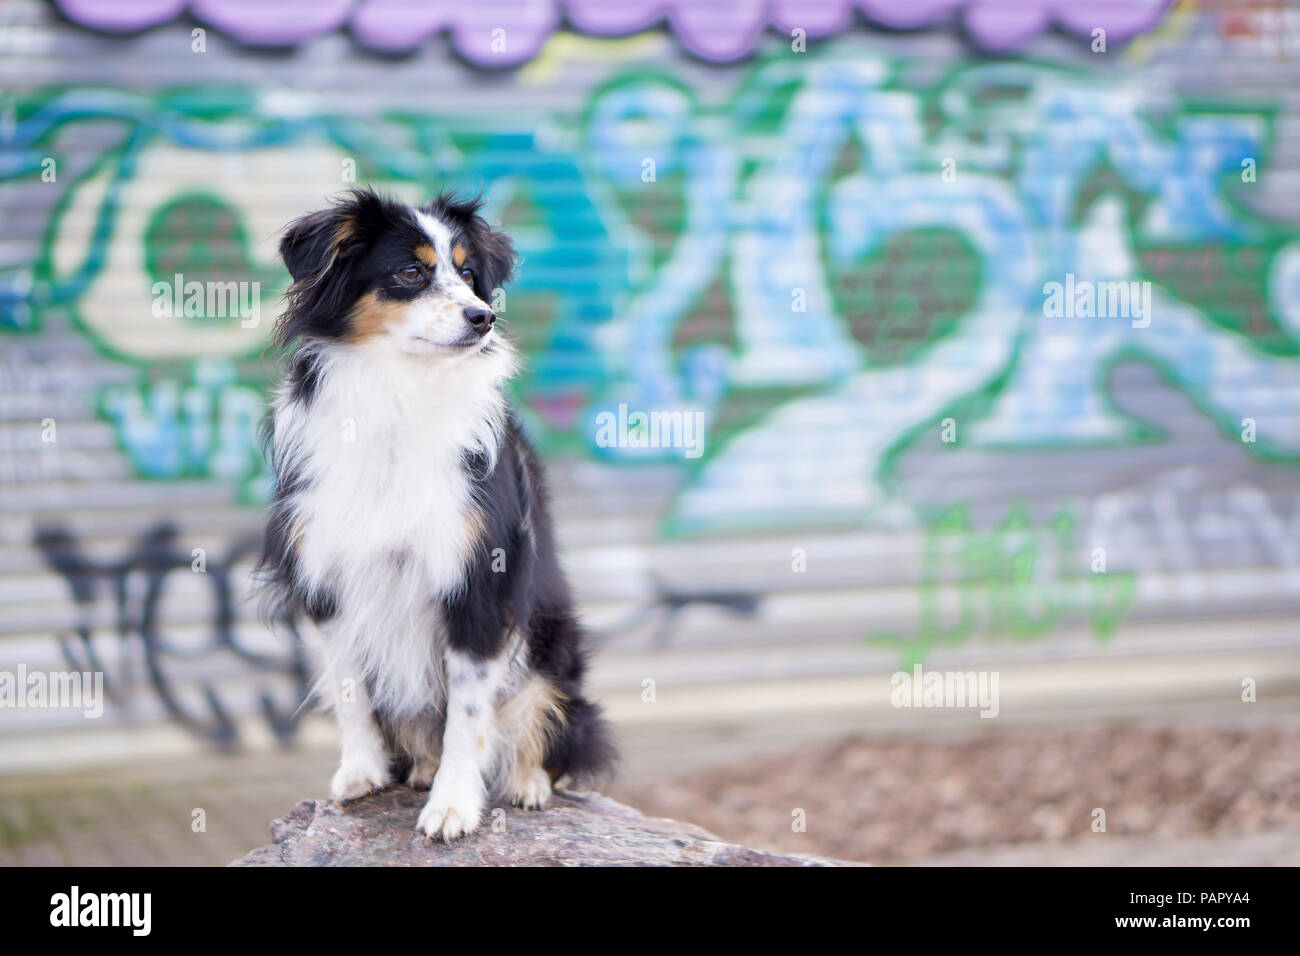 Nala die Miniatur Australian Shepherd, städtische Hund, Graffiti  Stockfotografie - Alamy